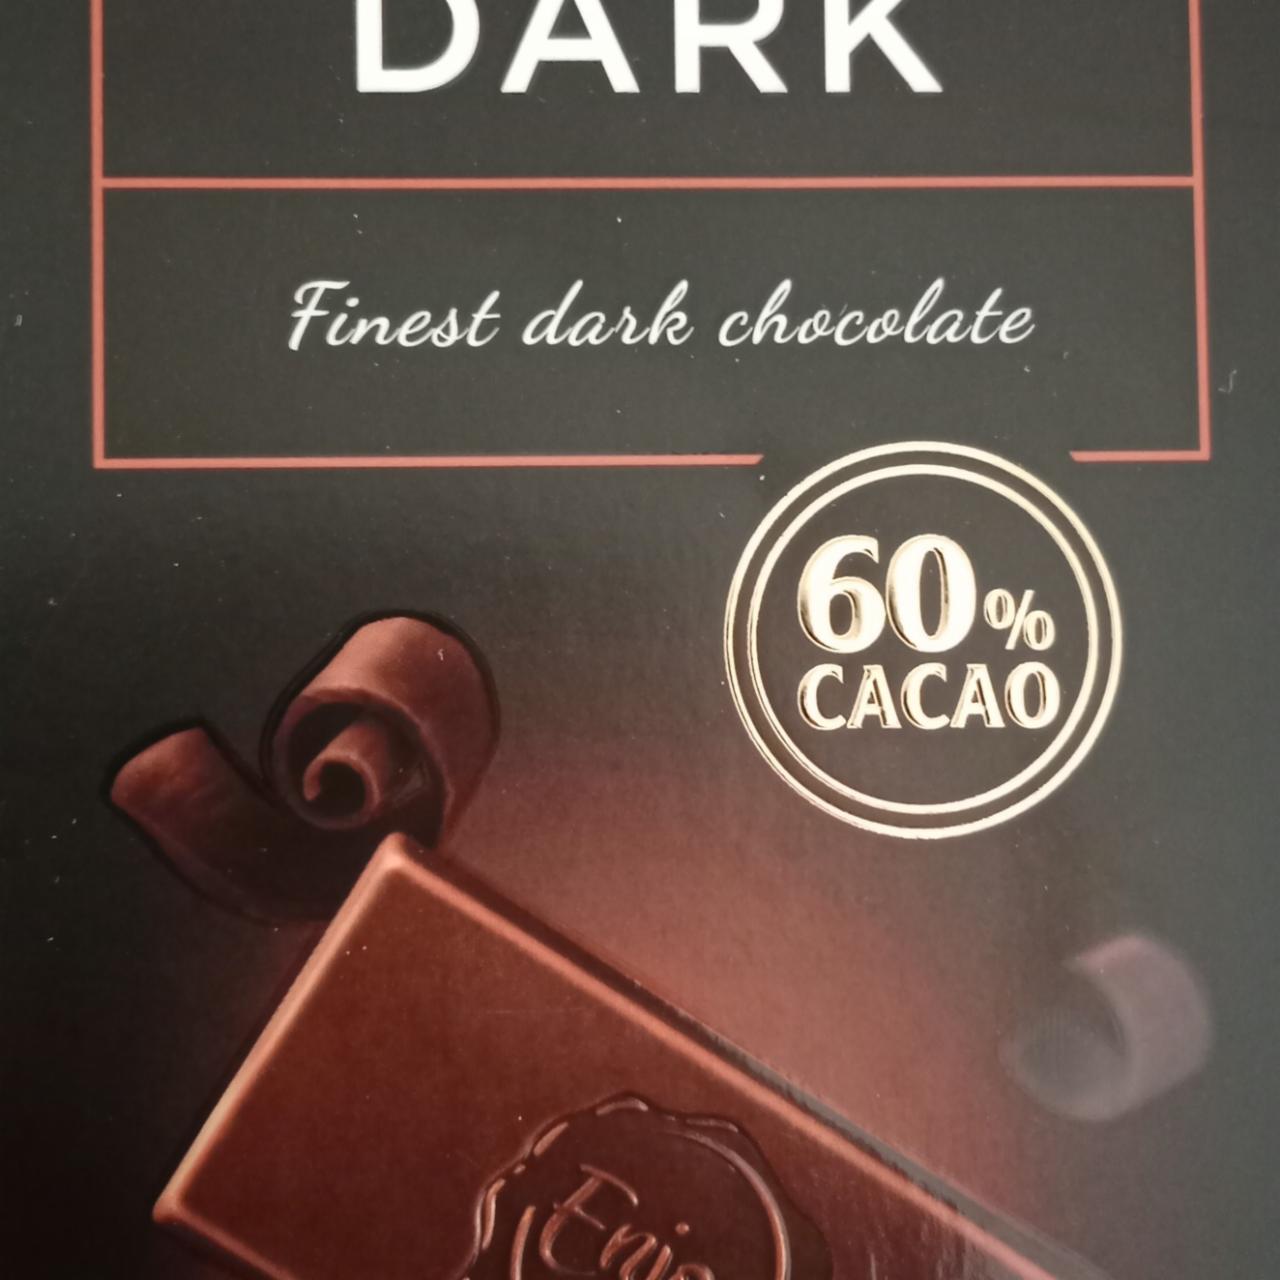 Fotografie - Finest dark chocolate 60% cacao Enjoy